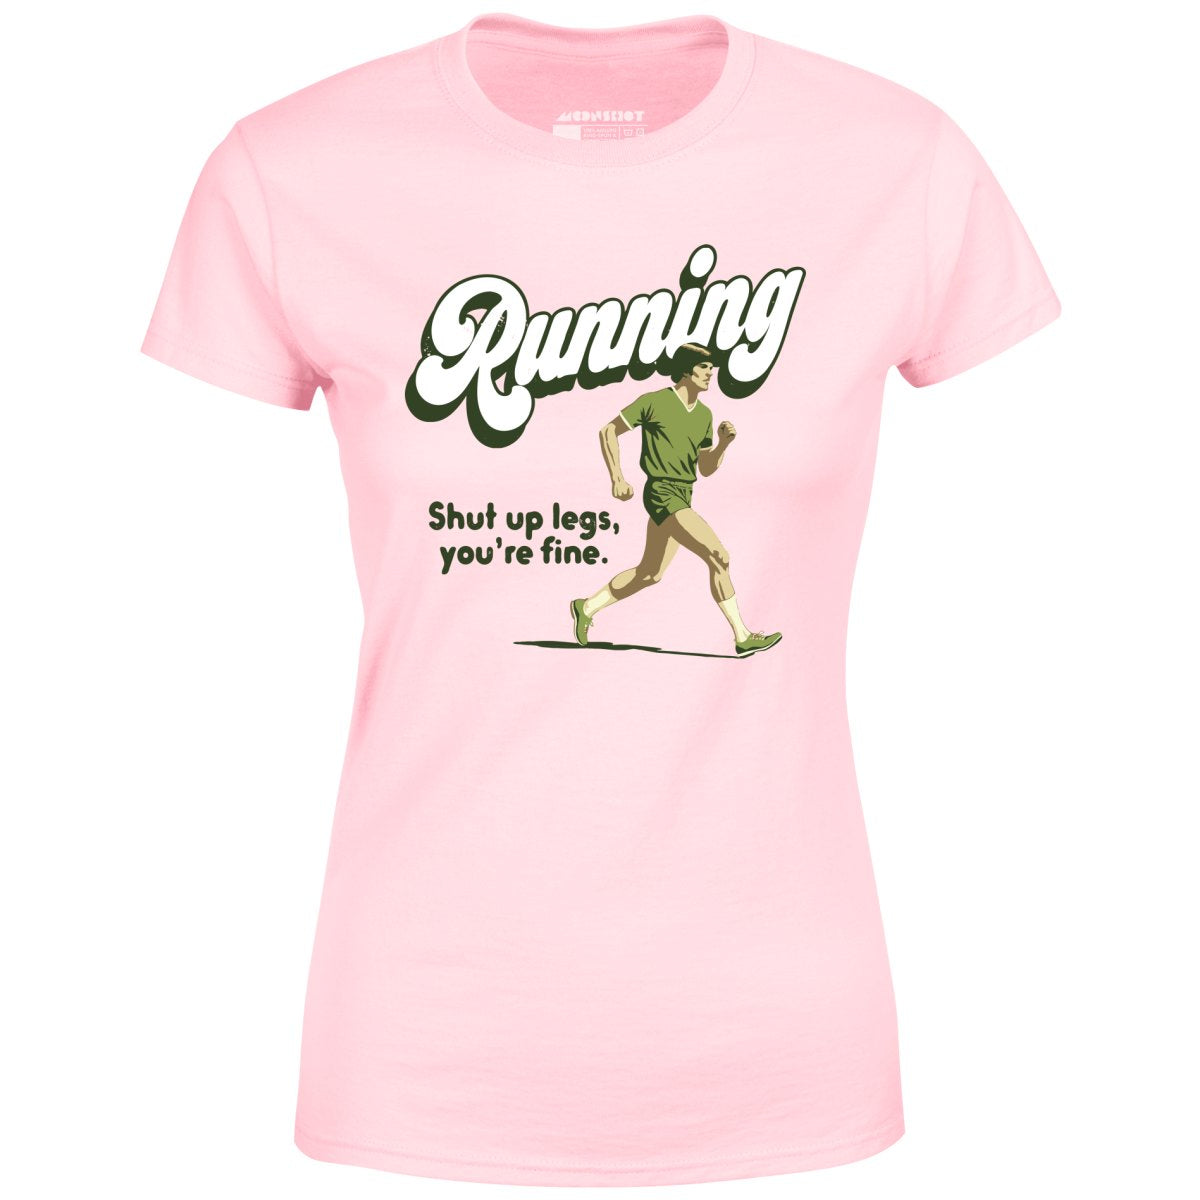 Running - Women's T-Shirt